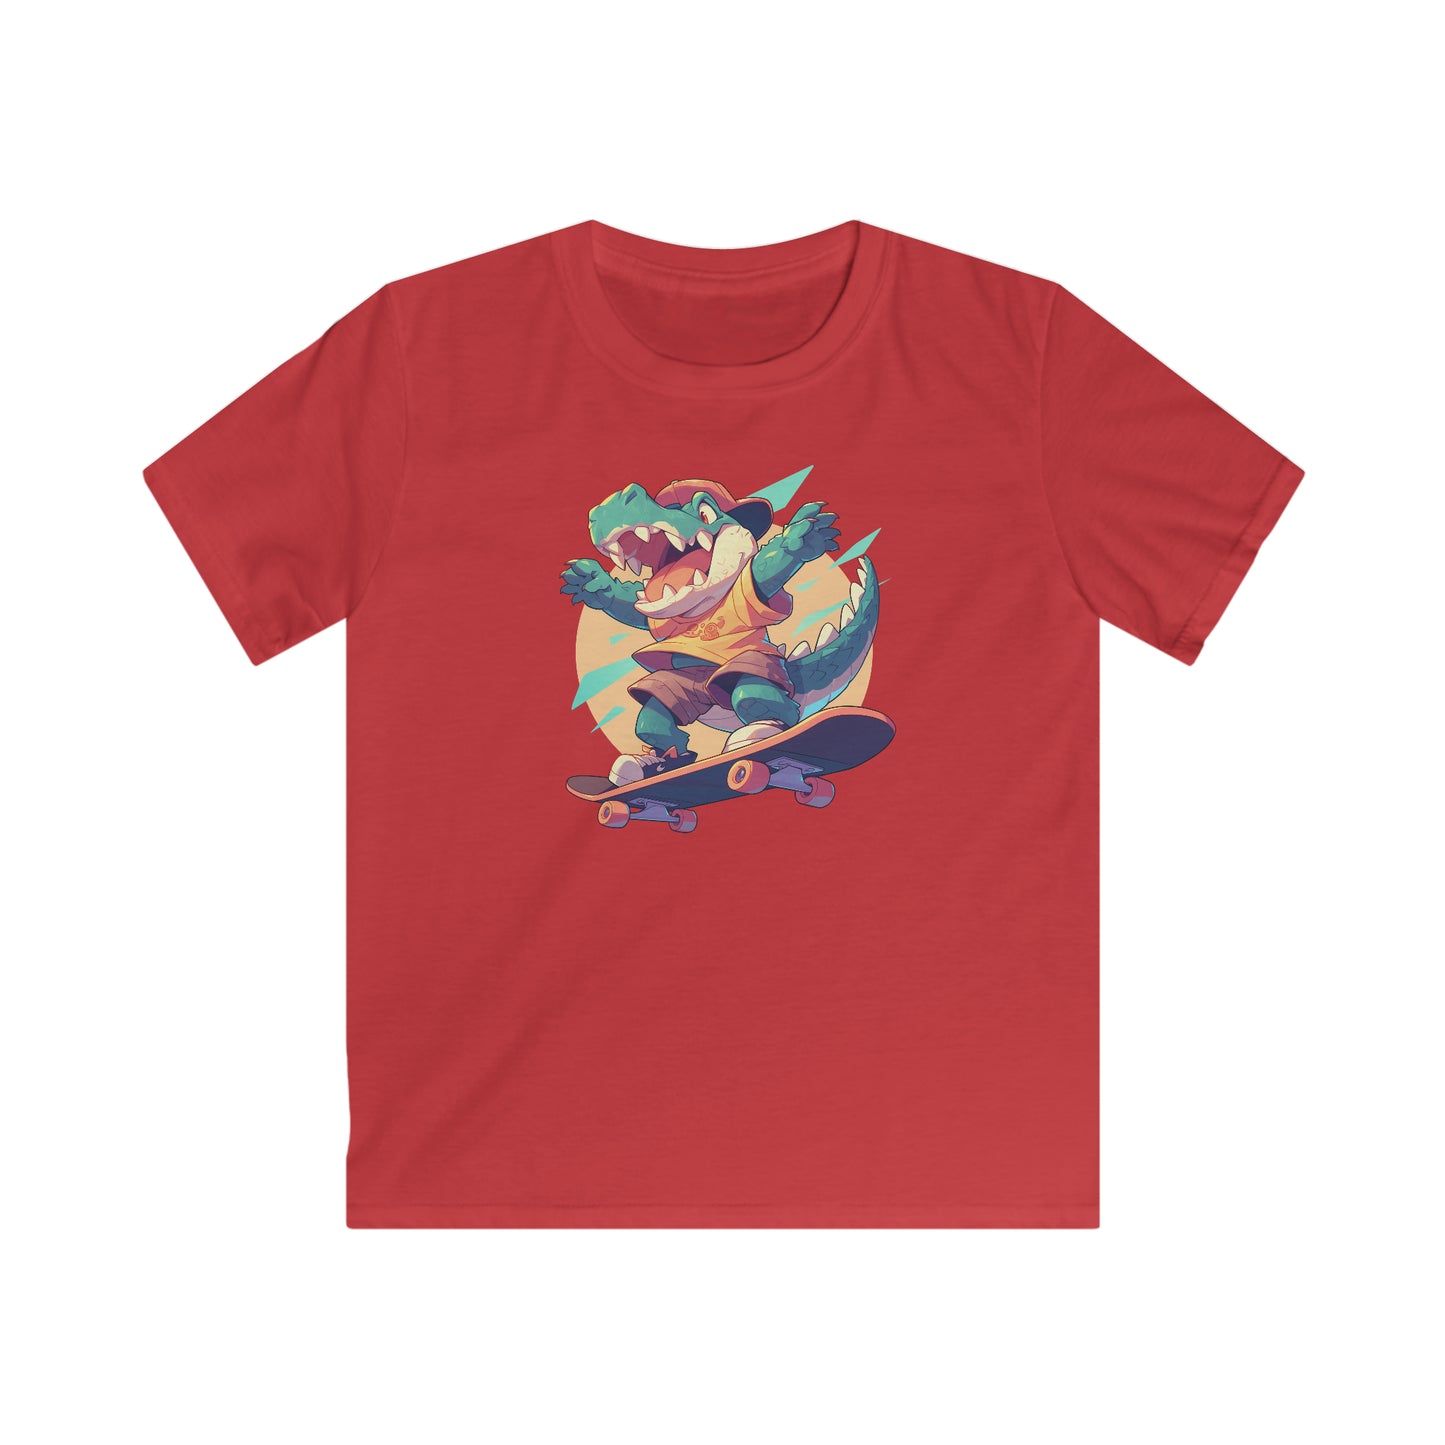 Skateboard Krokodil yay Kinder T-Shirt